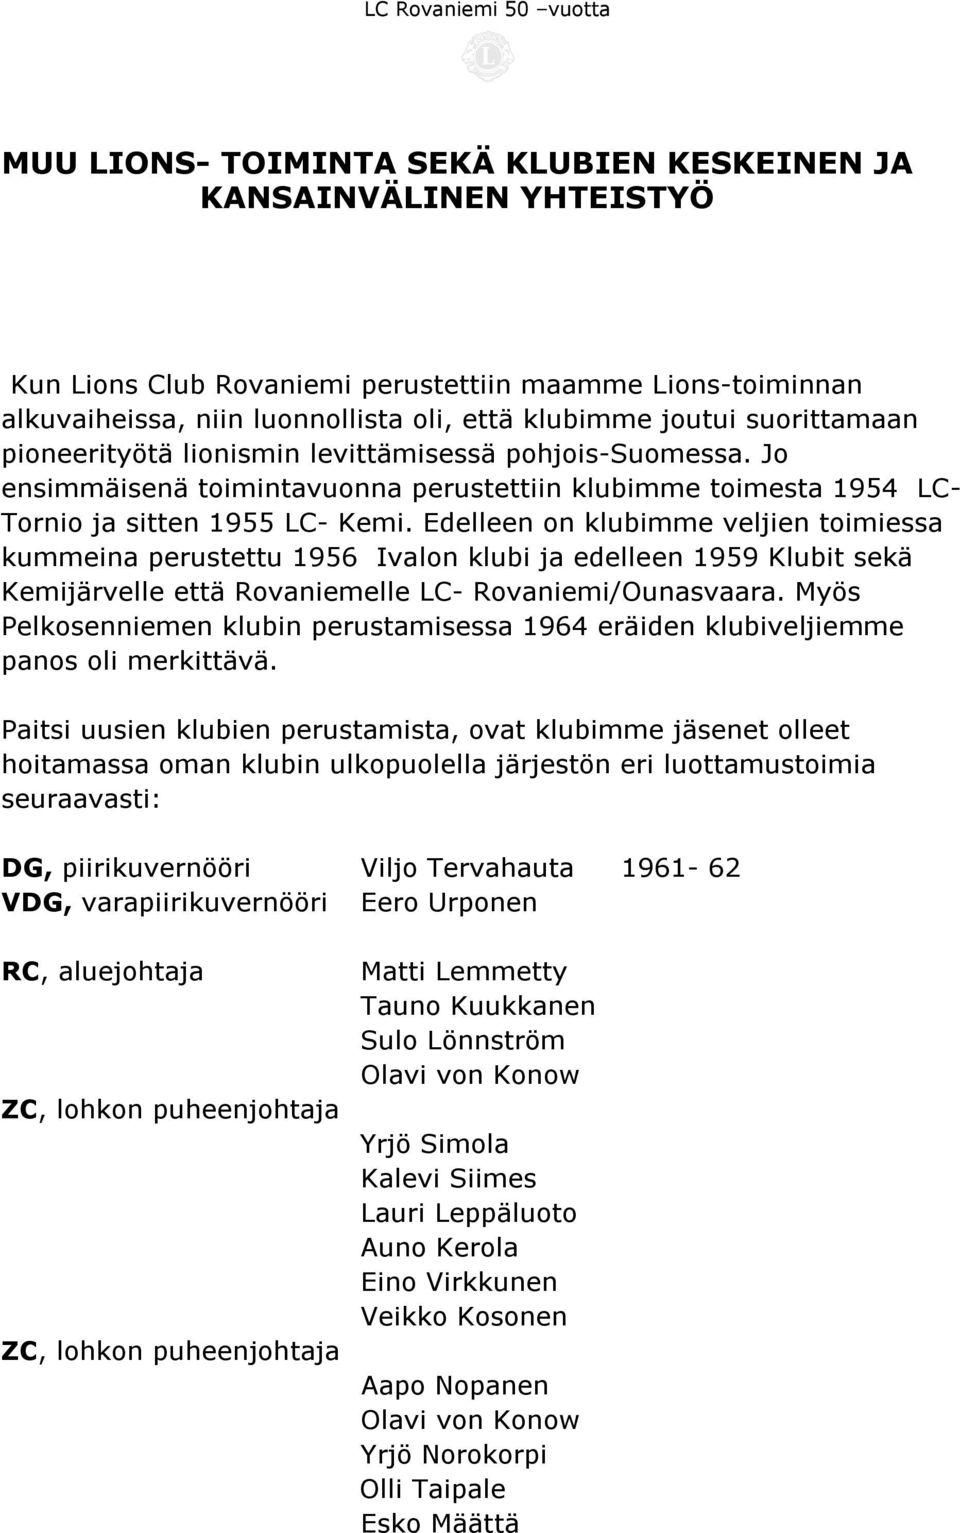 Edelleen on klubimme veljien toimiessa kummeina perustettu 1956 Ivalon klubi ja edelleen 1959 Klubit sekä Kemijärvelle että Rovaniemelle LC- Rovaniemi/Ounasvaara.